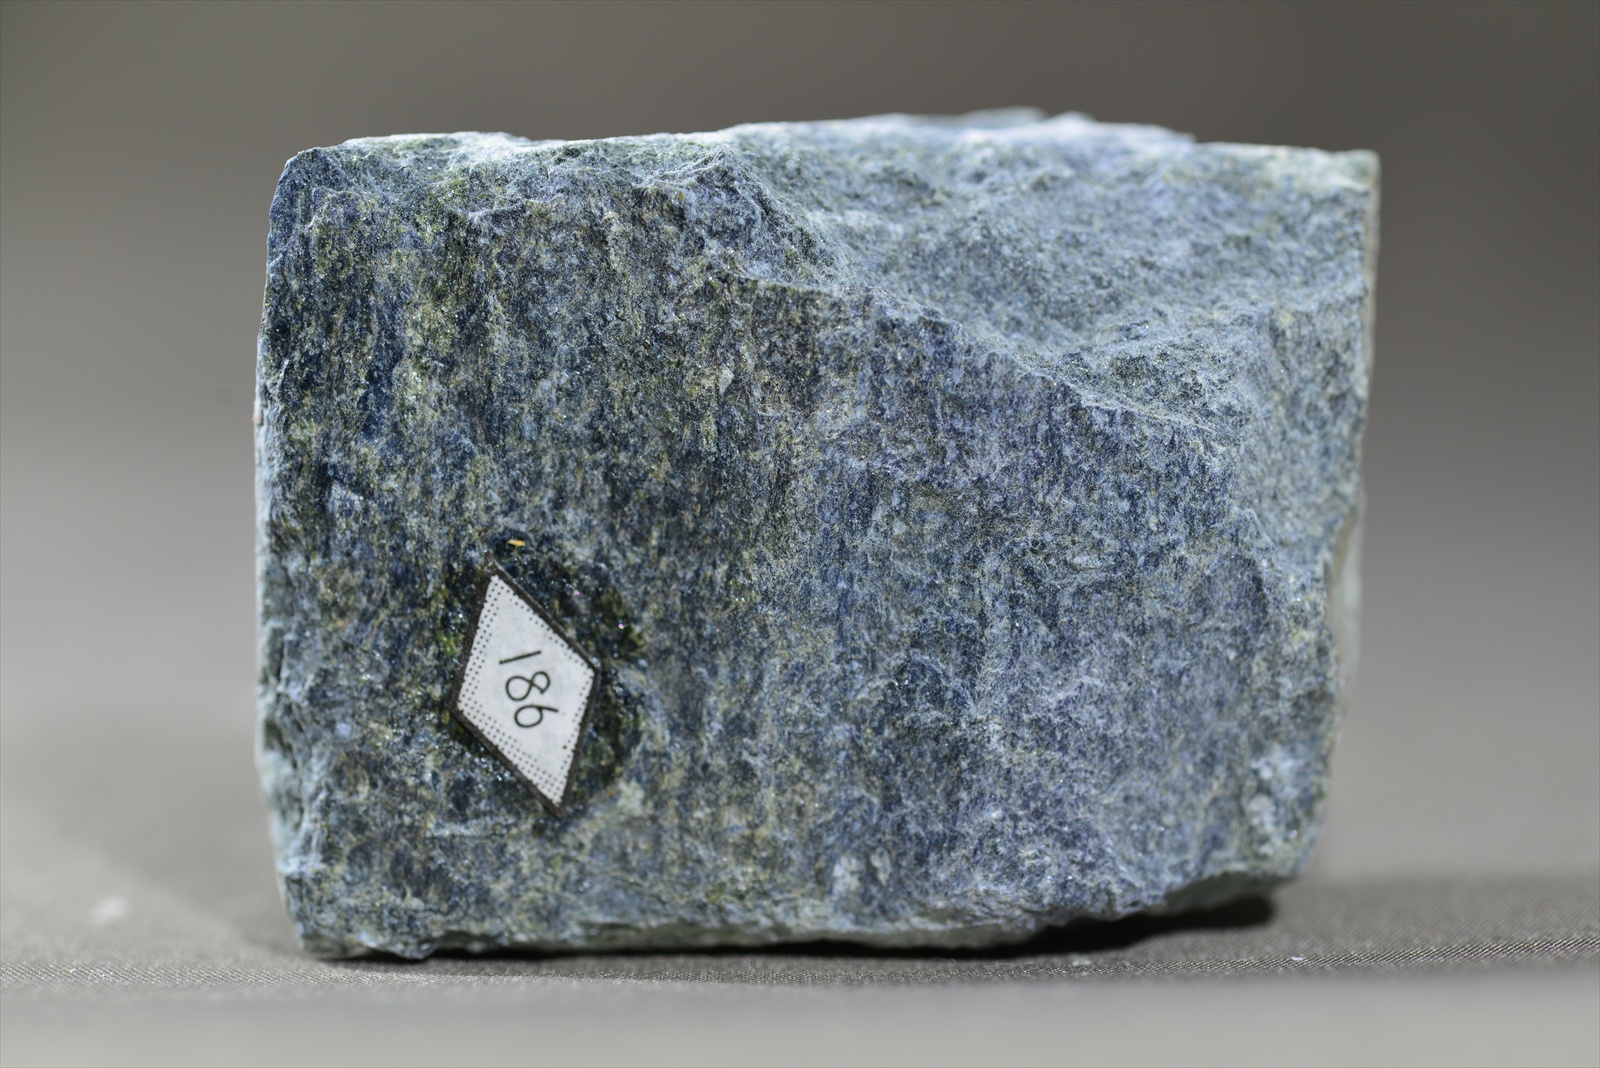 緑簾石藍閃石片岩(Epidote-glaucophane schist)